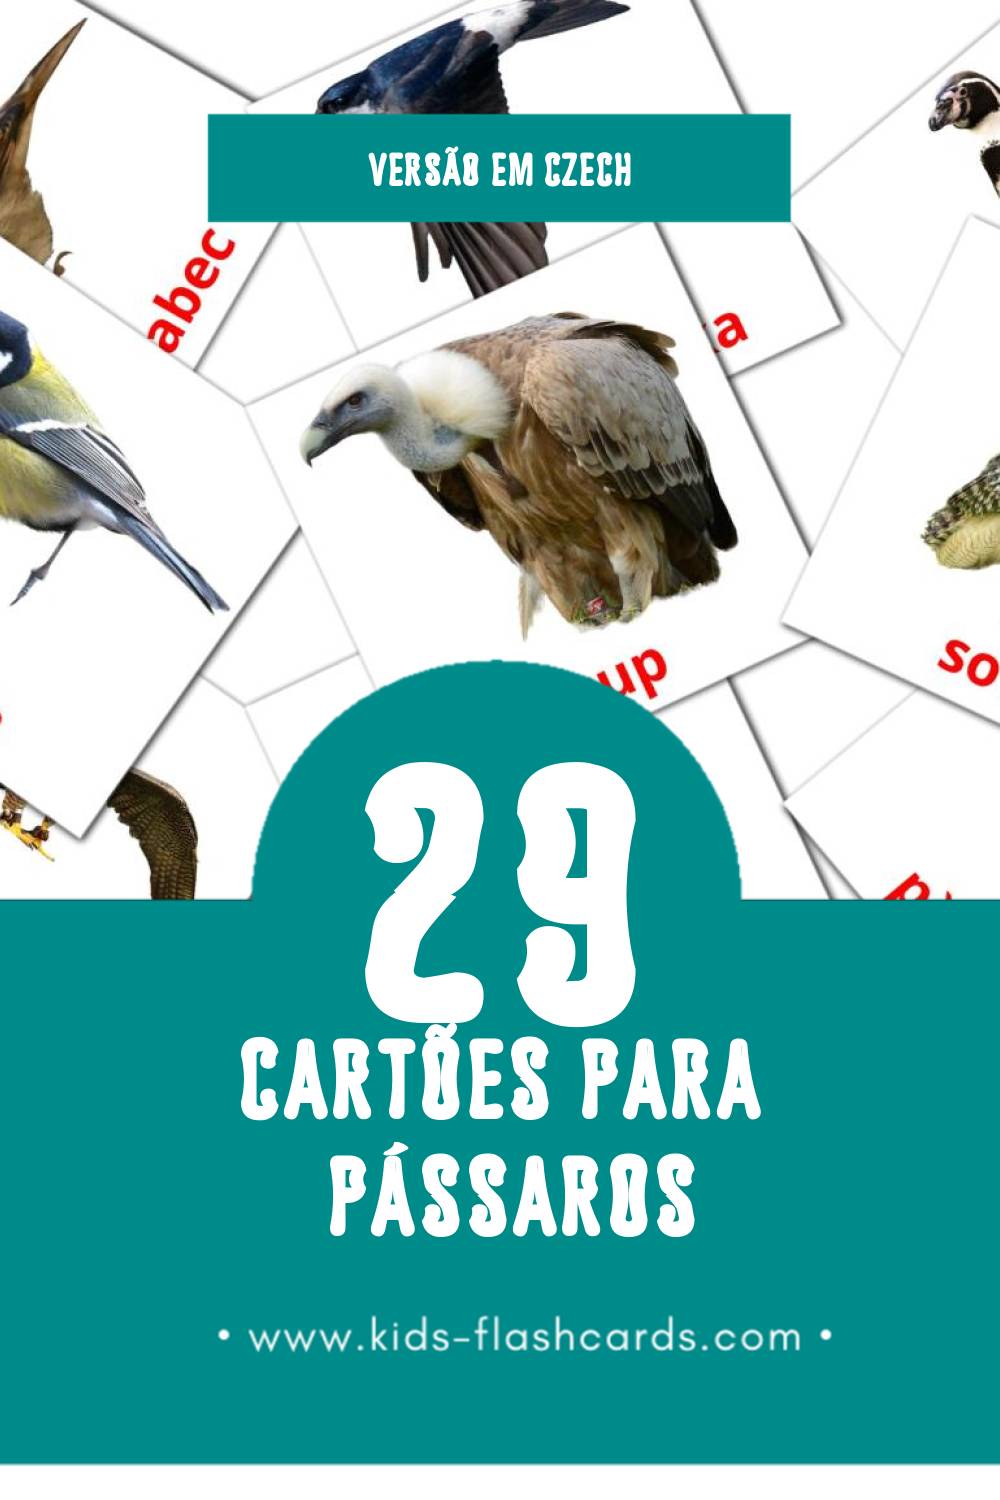 Flashcards de Ptáci Visuais para Toddlers (29 cartões em Czech)